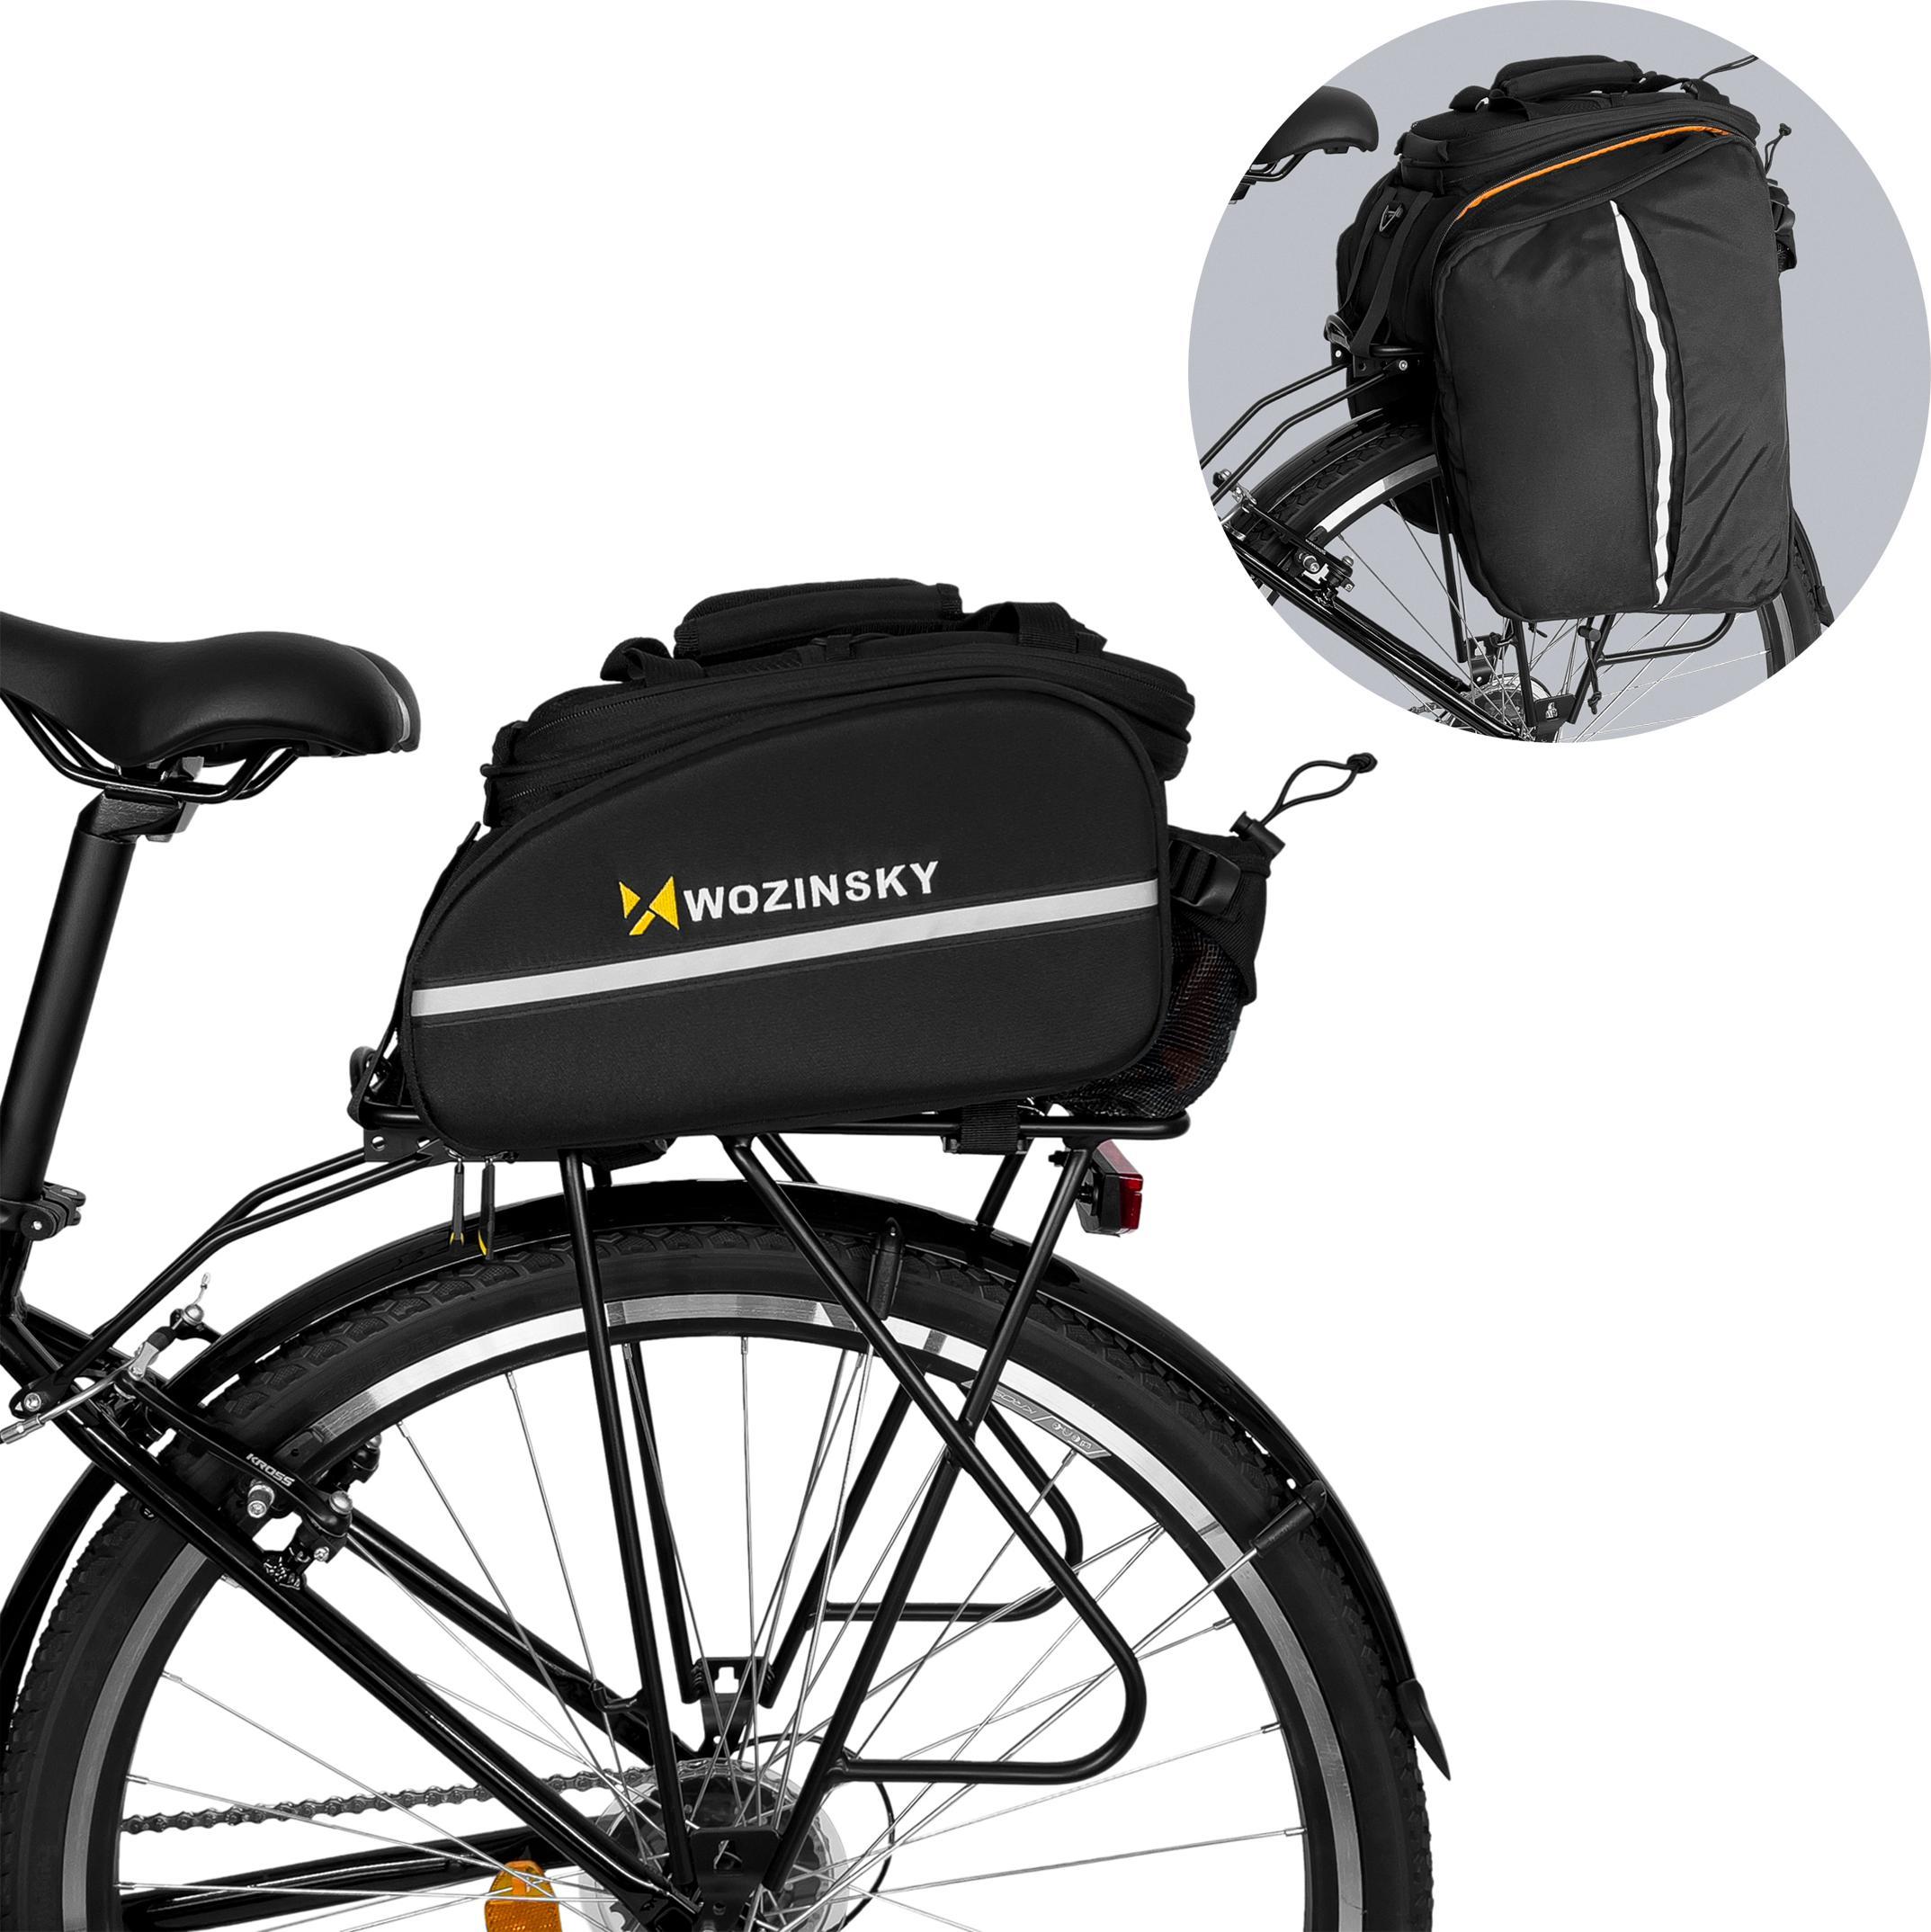 Wozinsky Wozinsky pojemna torba rowerowa na bagaznik 35L (pokrowiec przeciwdeszczowy w zestawie) czarny (WBB19BK) 5907769300615 (59077693006